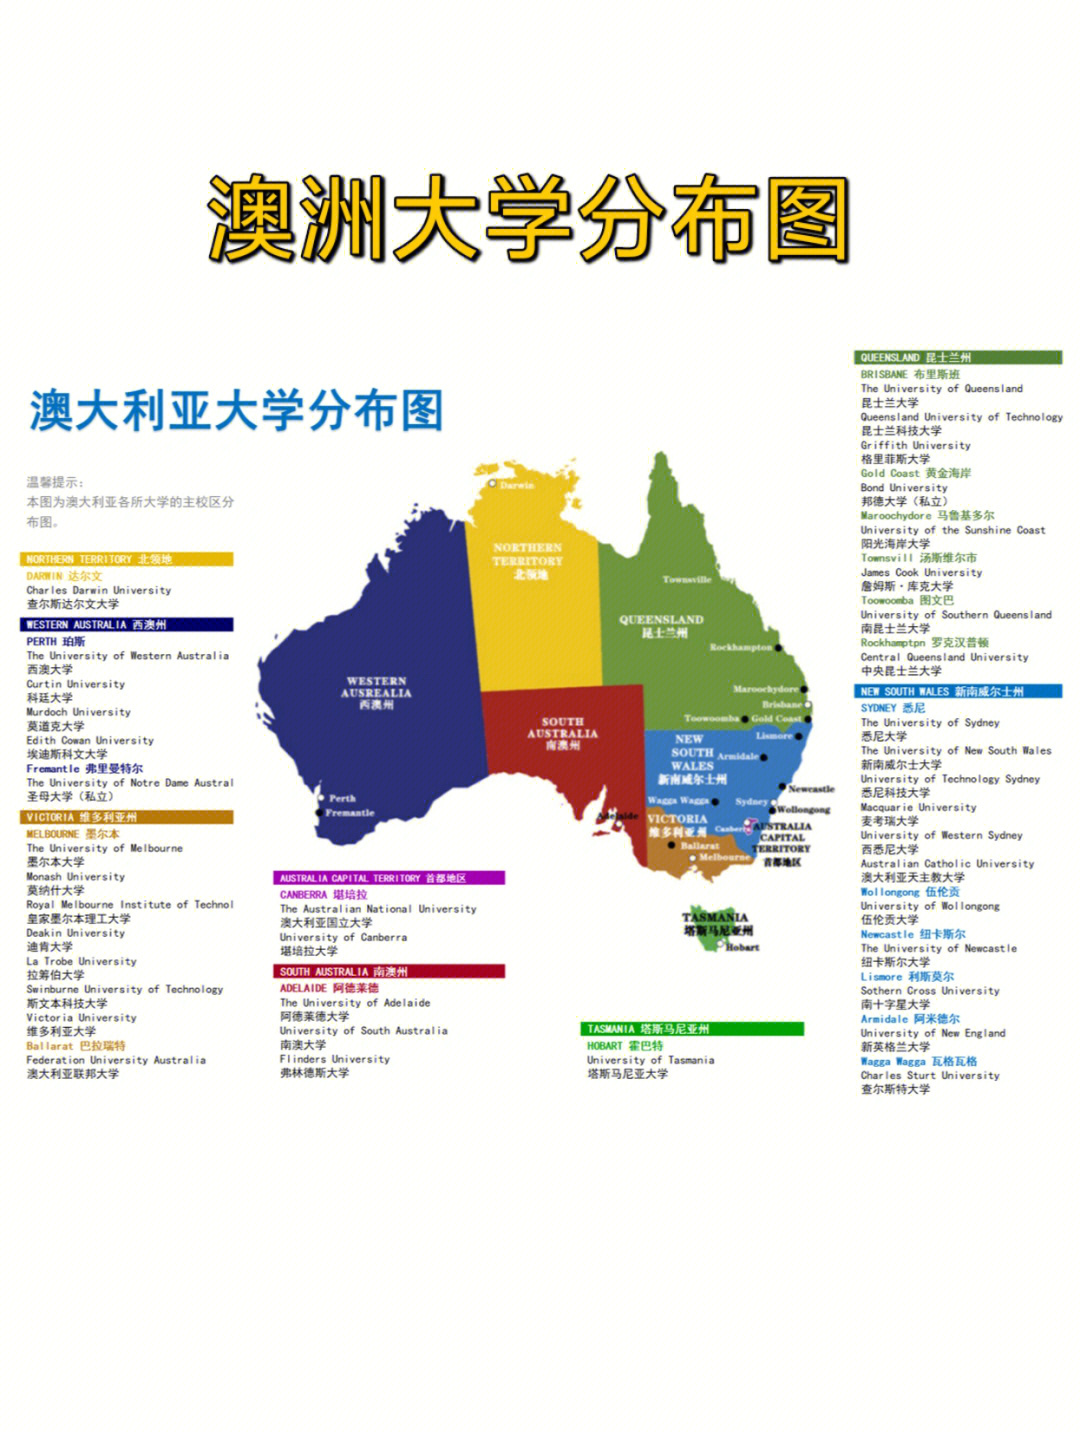 澳洲一共认可39所大学,其中,东部海岸分布的大学最多,南部和西部其次